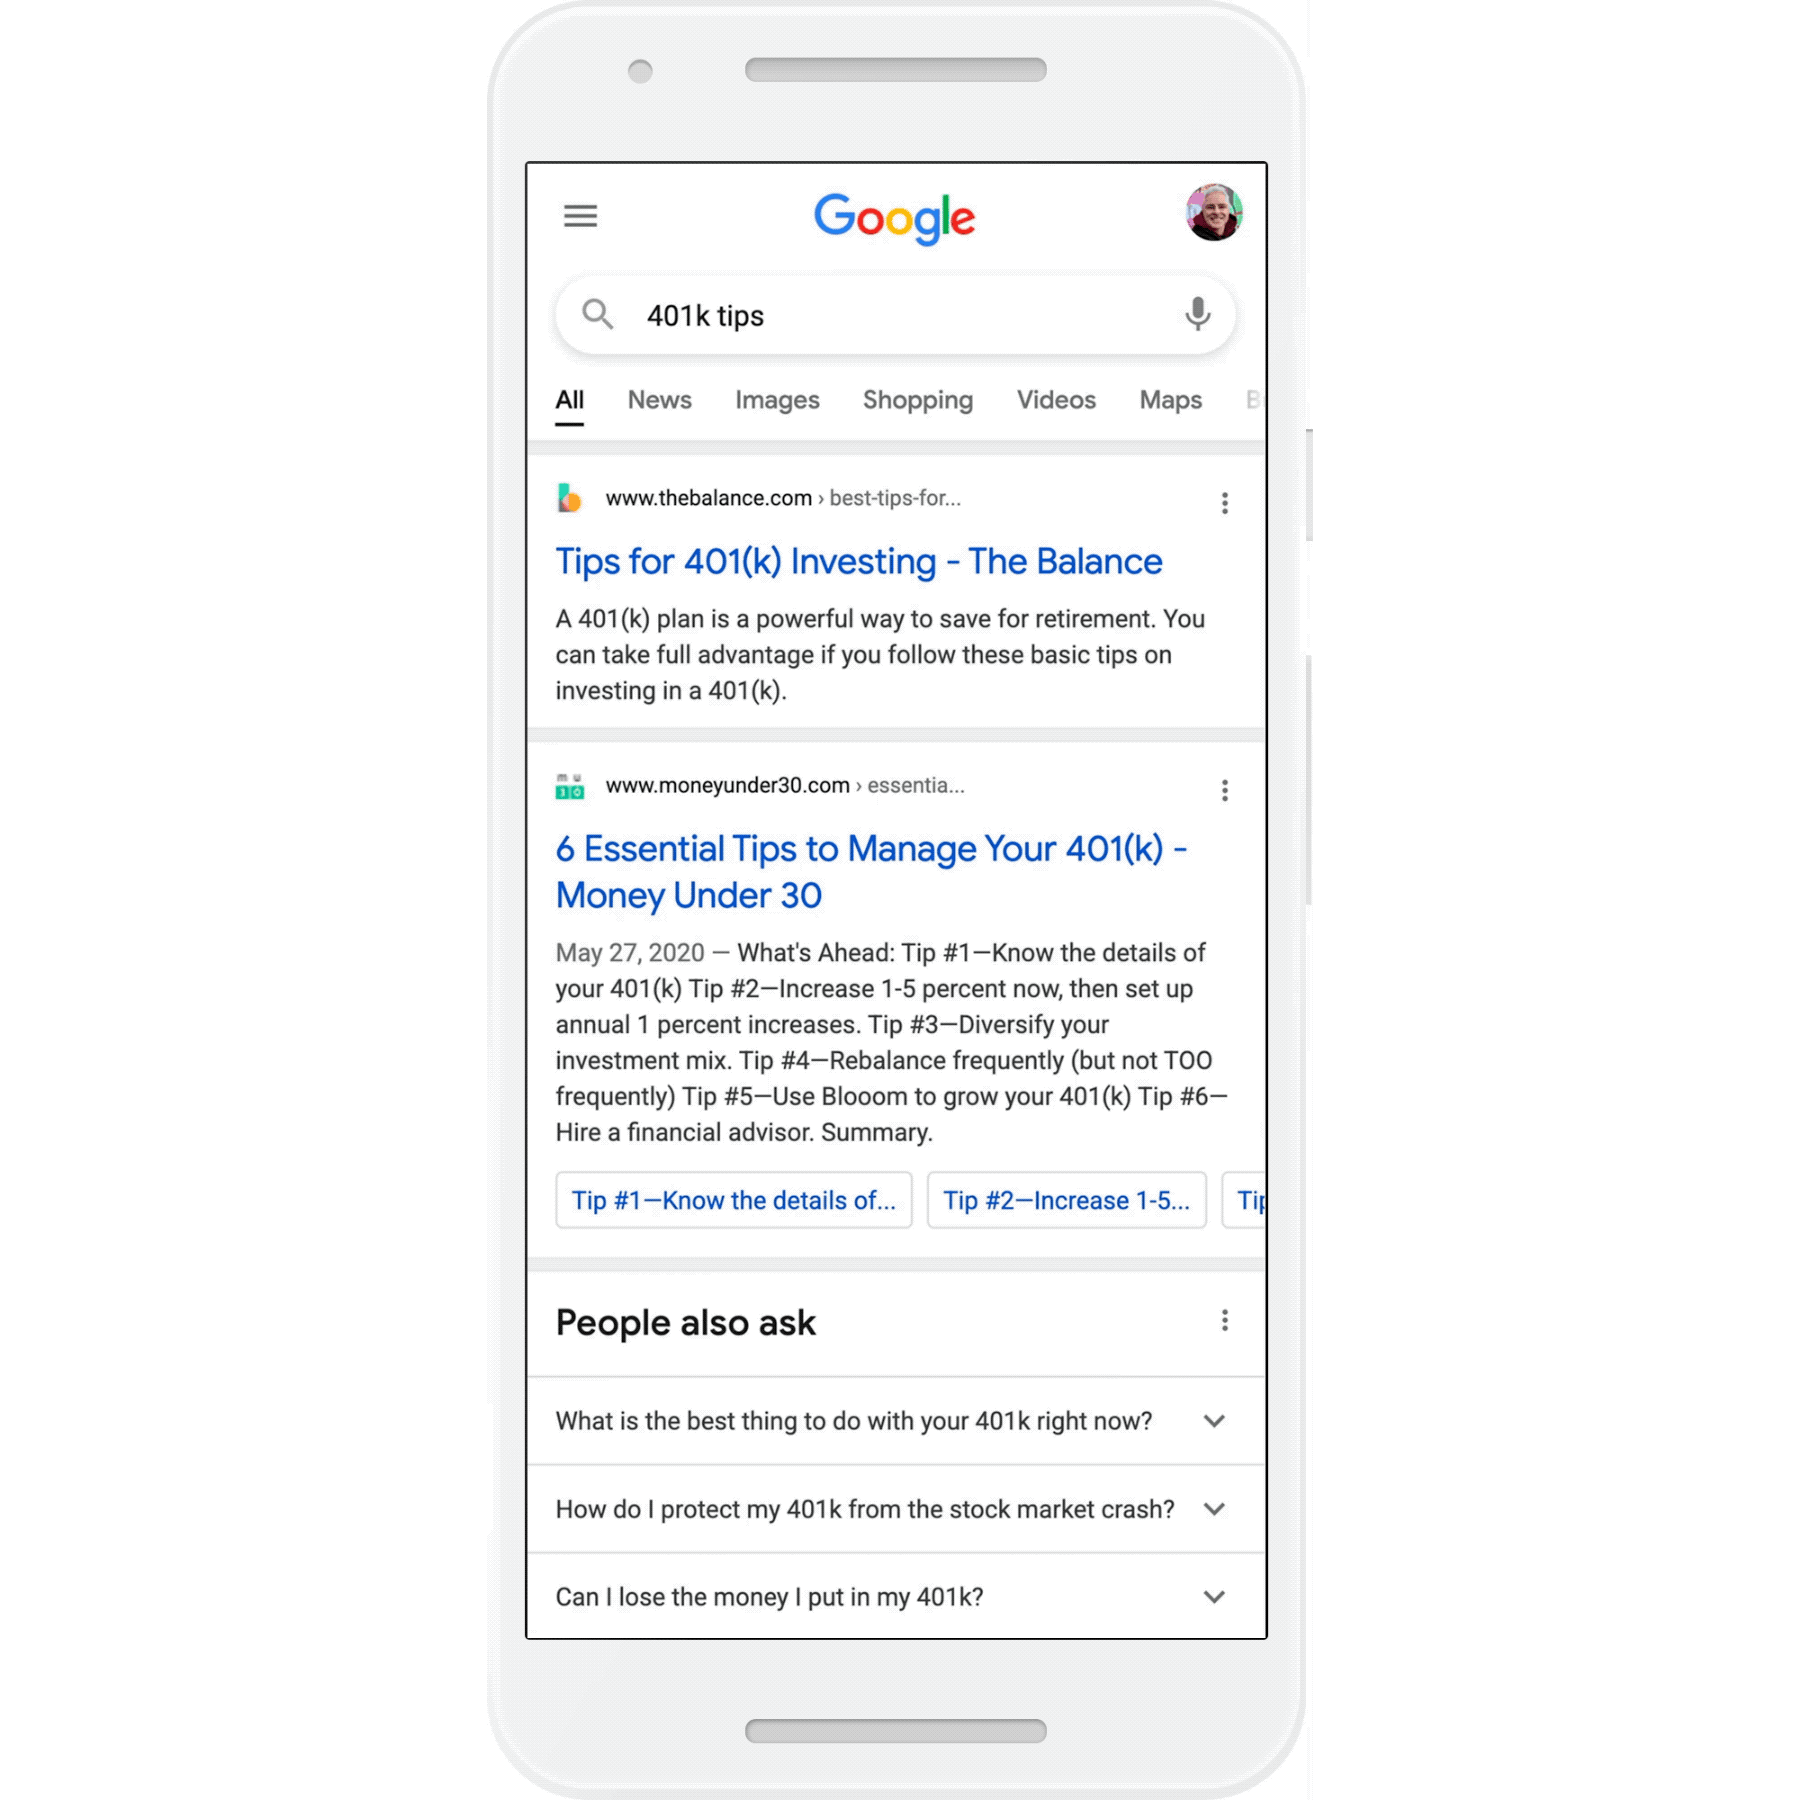 Google Penelusuran menambahkan tag info baru untuk memverifikasi hasil penelusuran